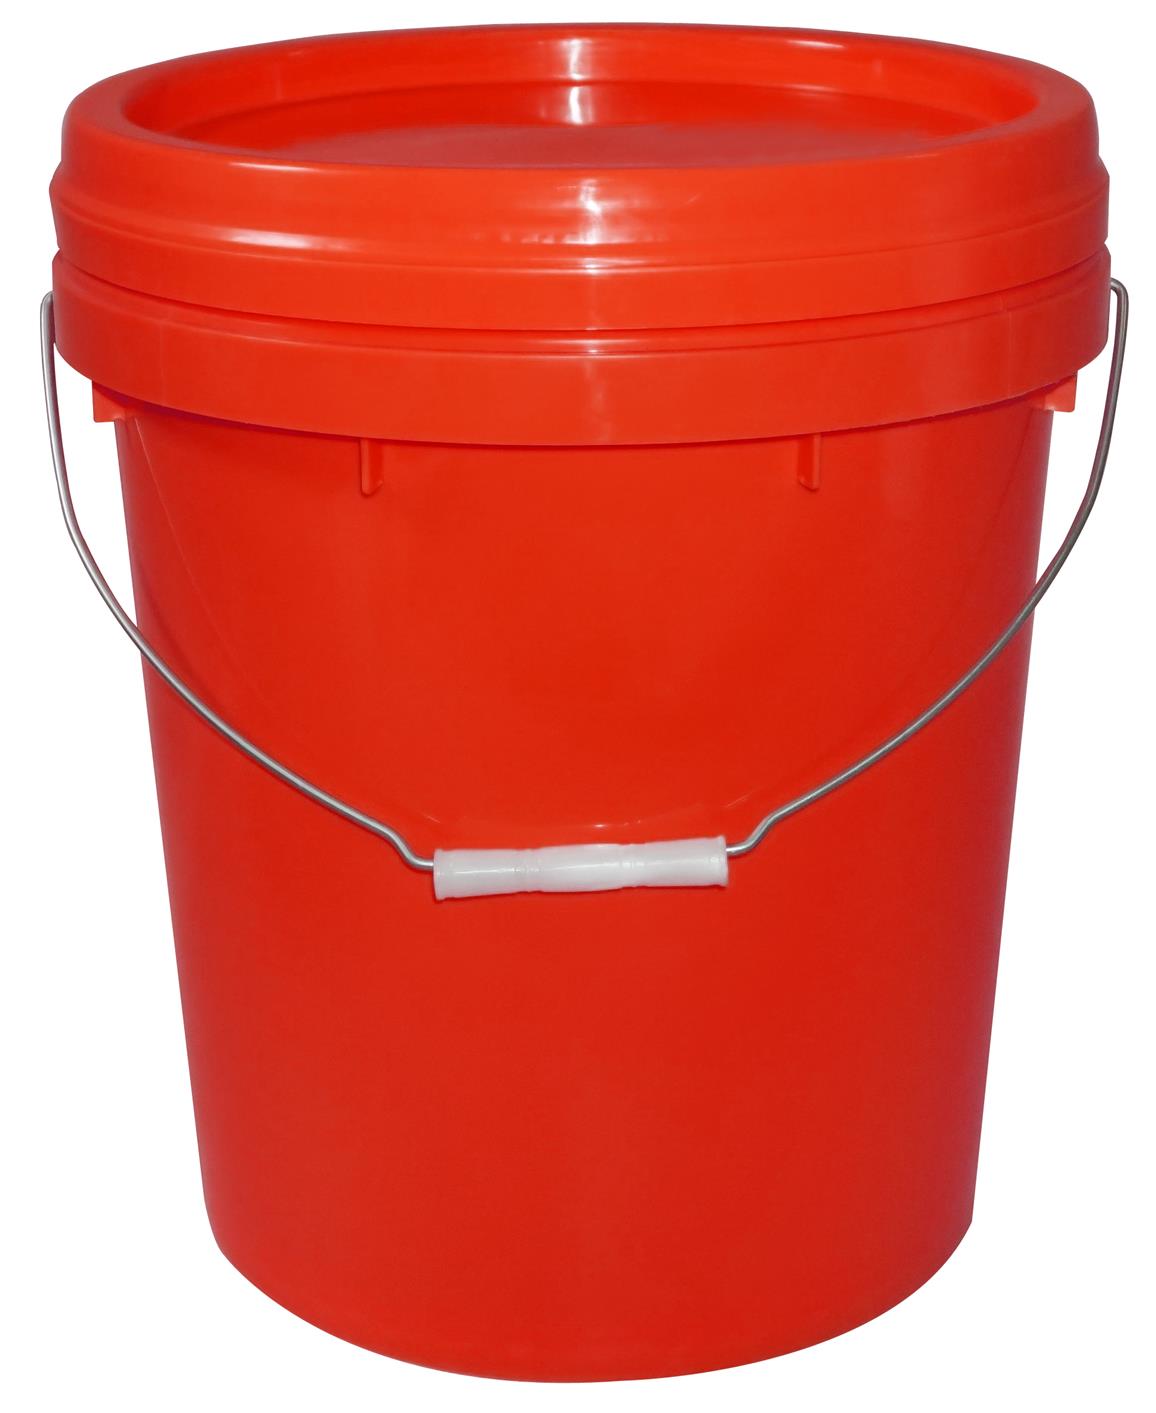 塑料机油桶注塑机塑料桶生产设备型号